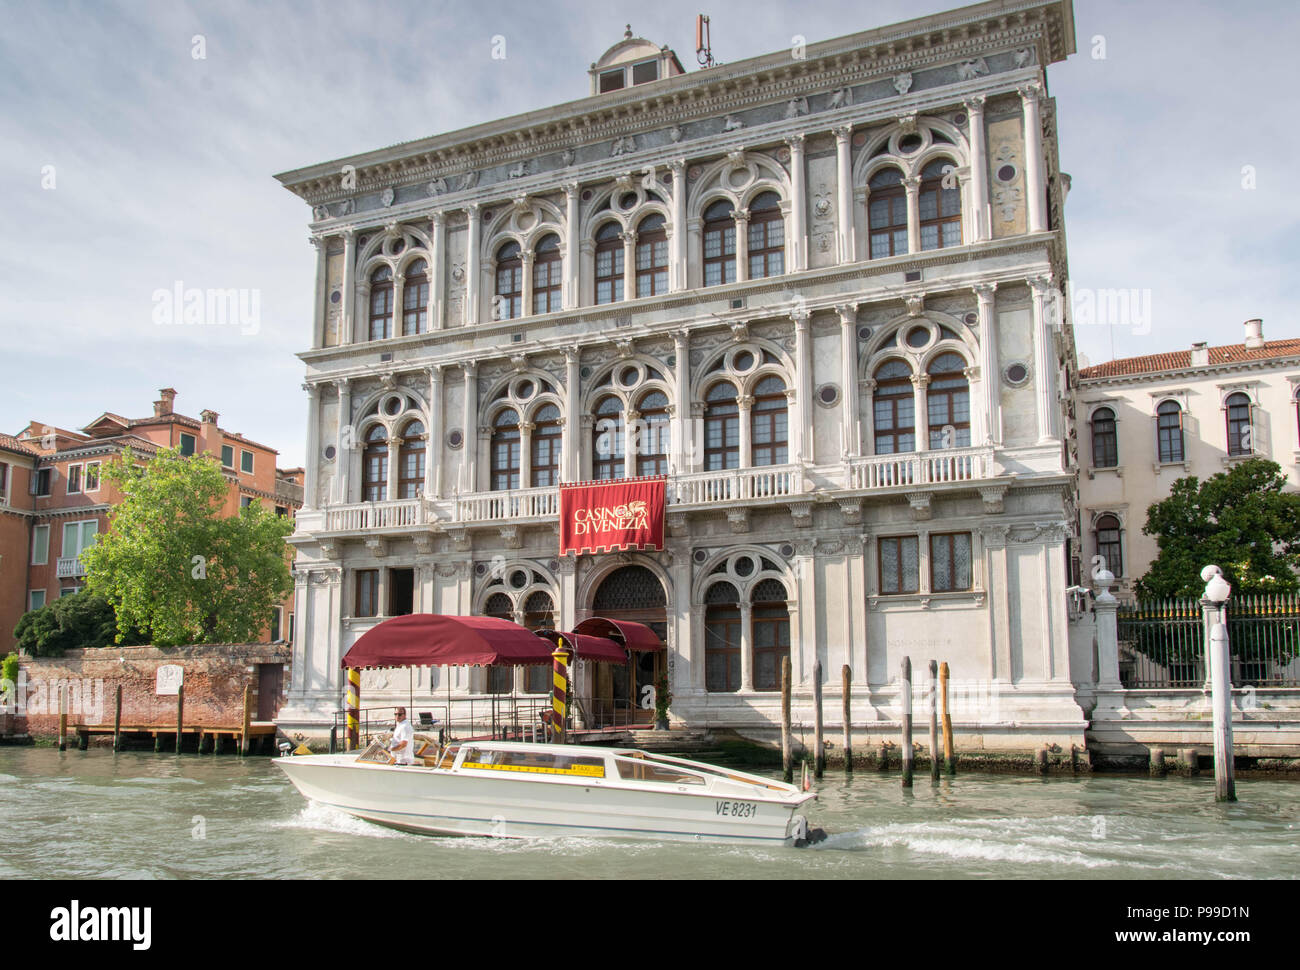 Europa, Itale, Veneto, Venezia. L'acqua taxi al Canale Grande (Grand Canal) vicino al Casinò di Venezia, Museo Wagner. Foto Stock